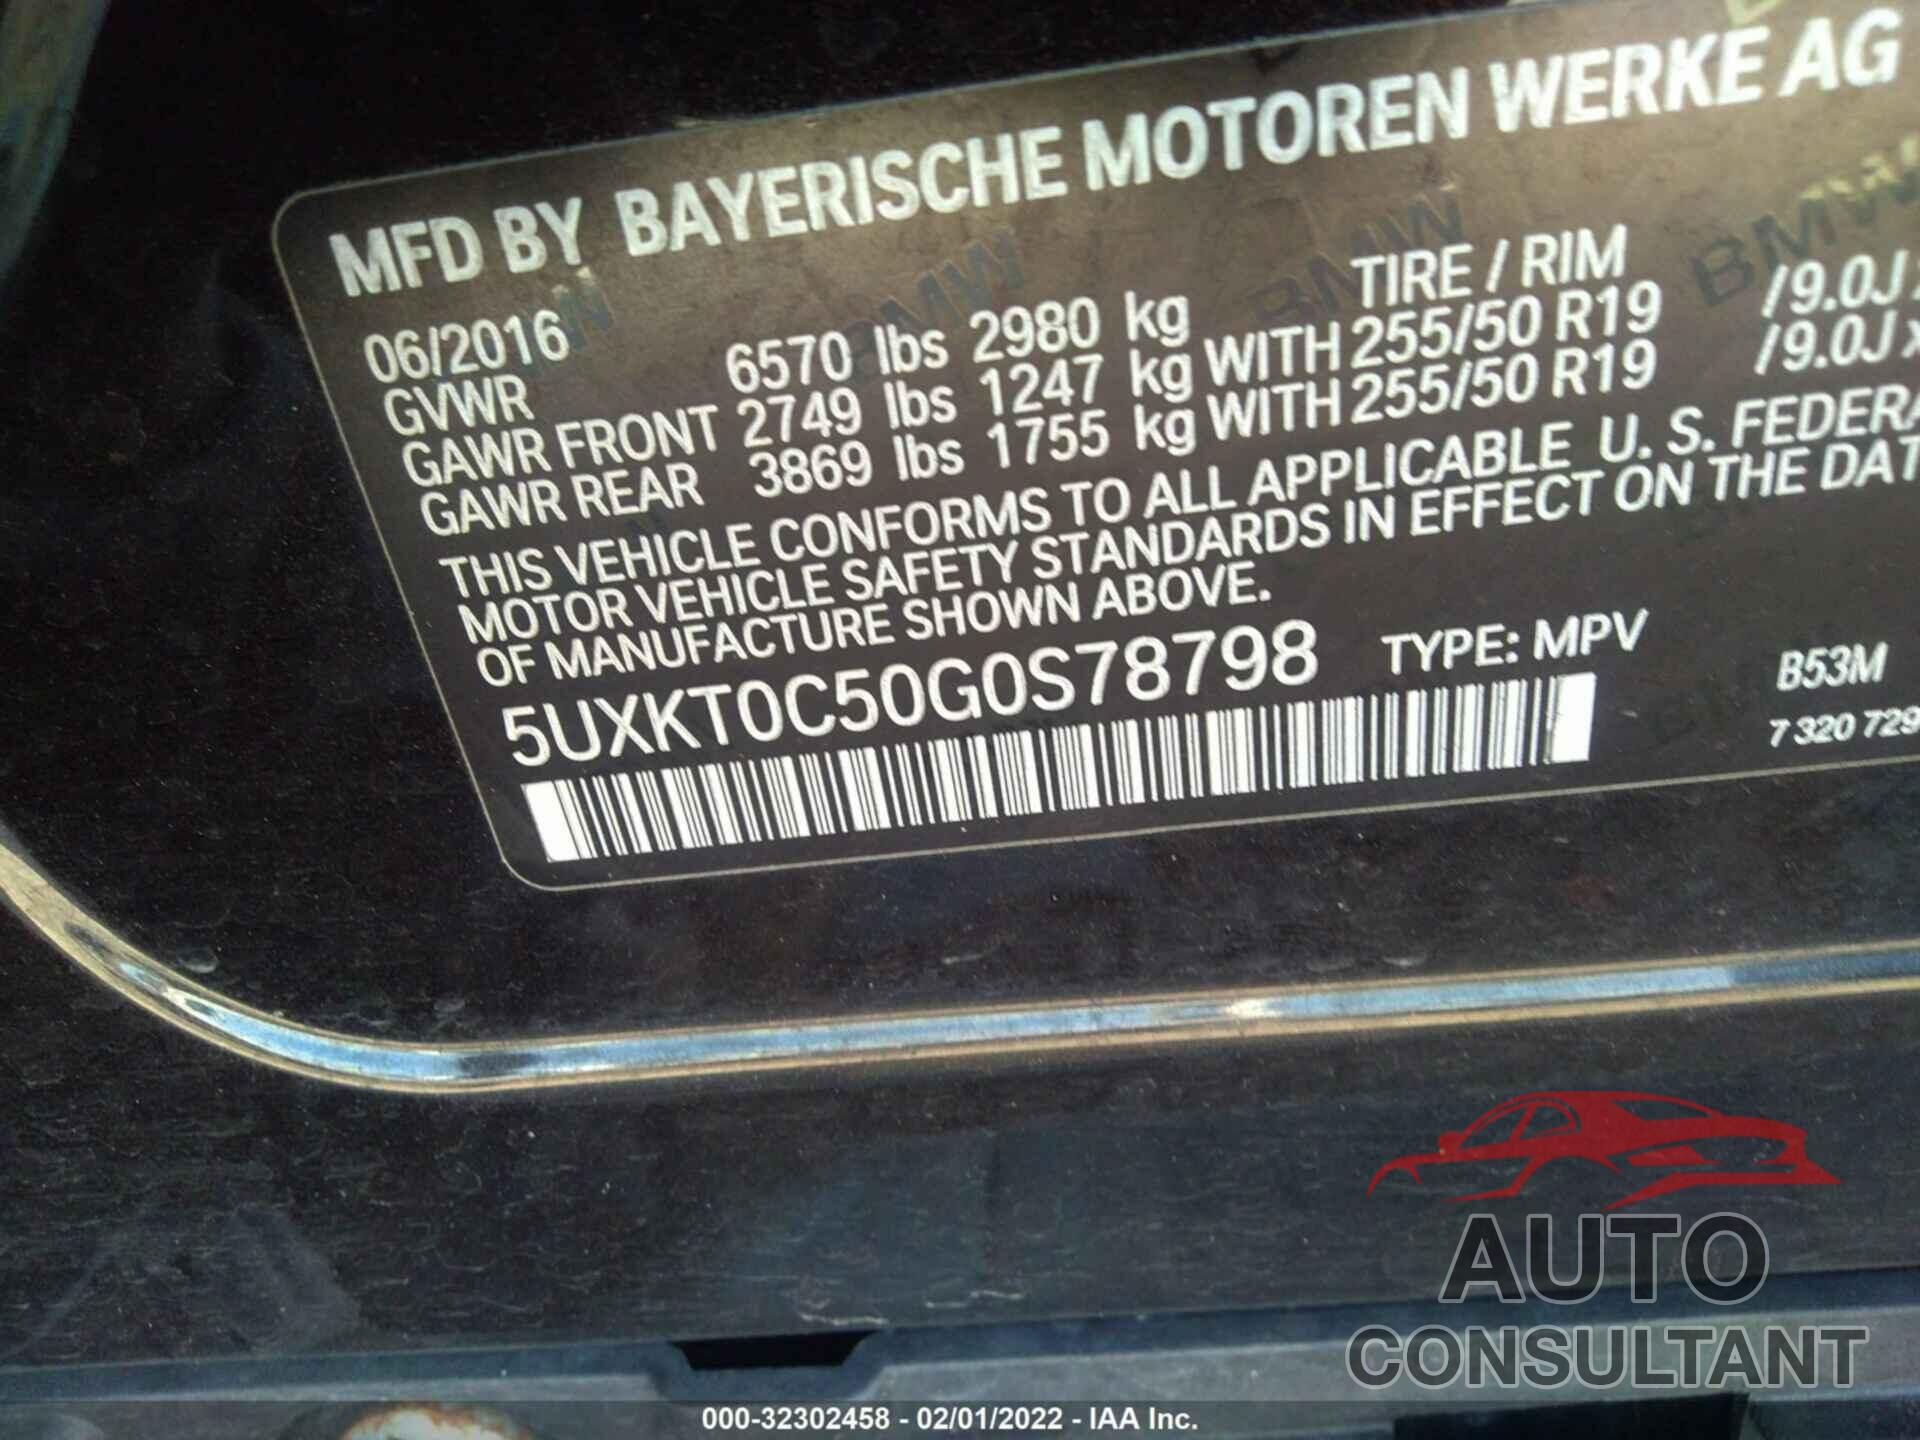 BMW X5 EDRIVE 2016 - 5UXKT0C50G0S78798